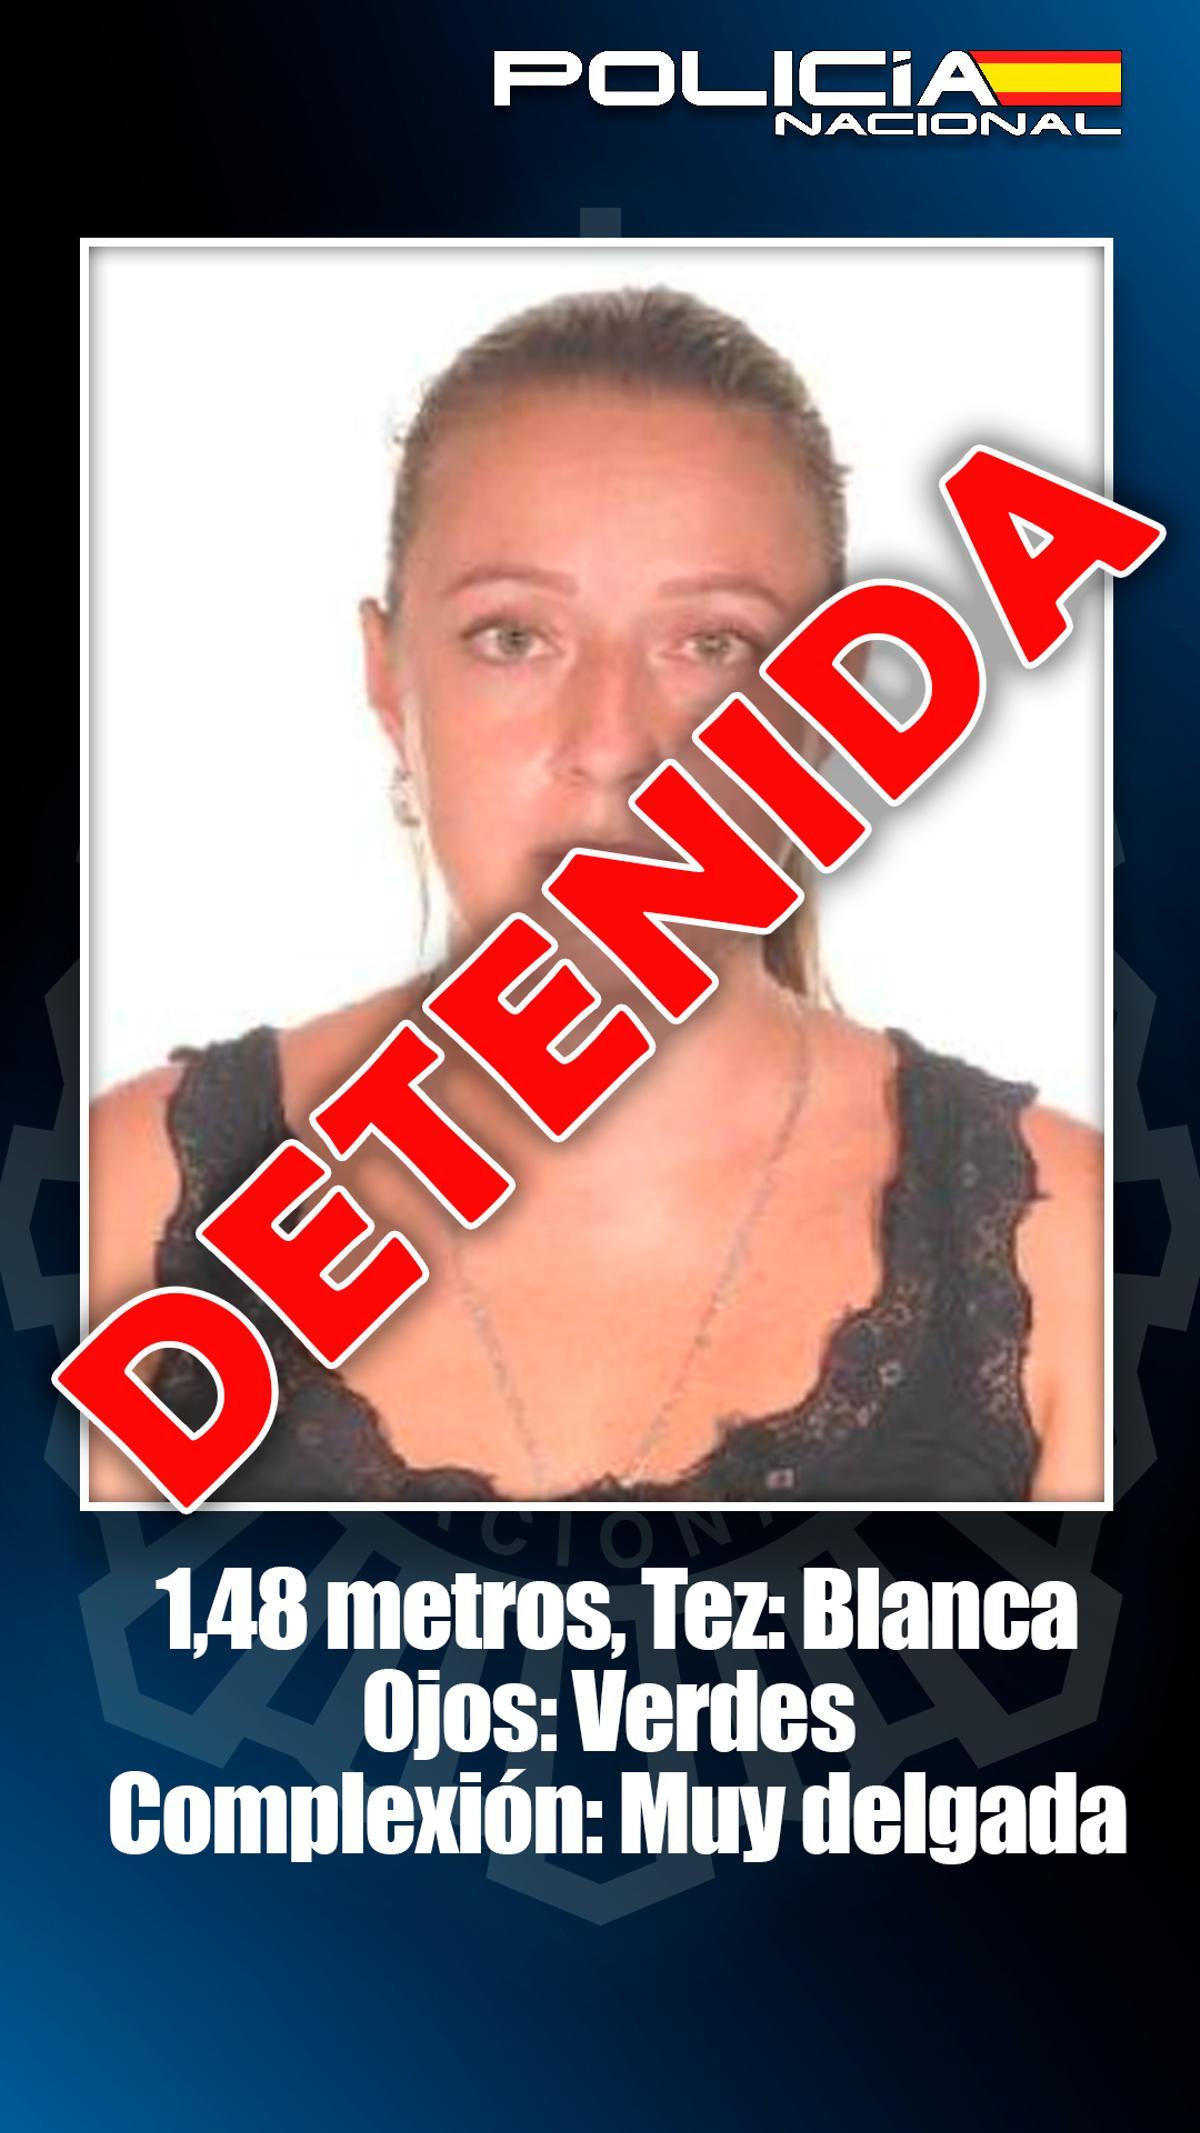 Imagen difundida por la Policía tras la captura de Viviana.